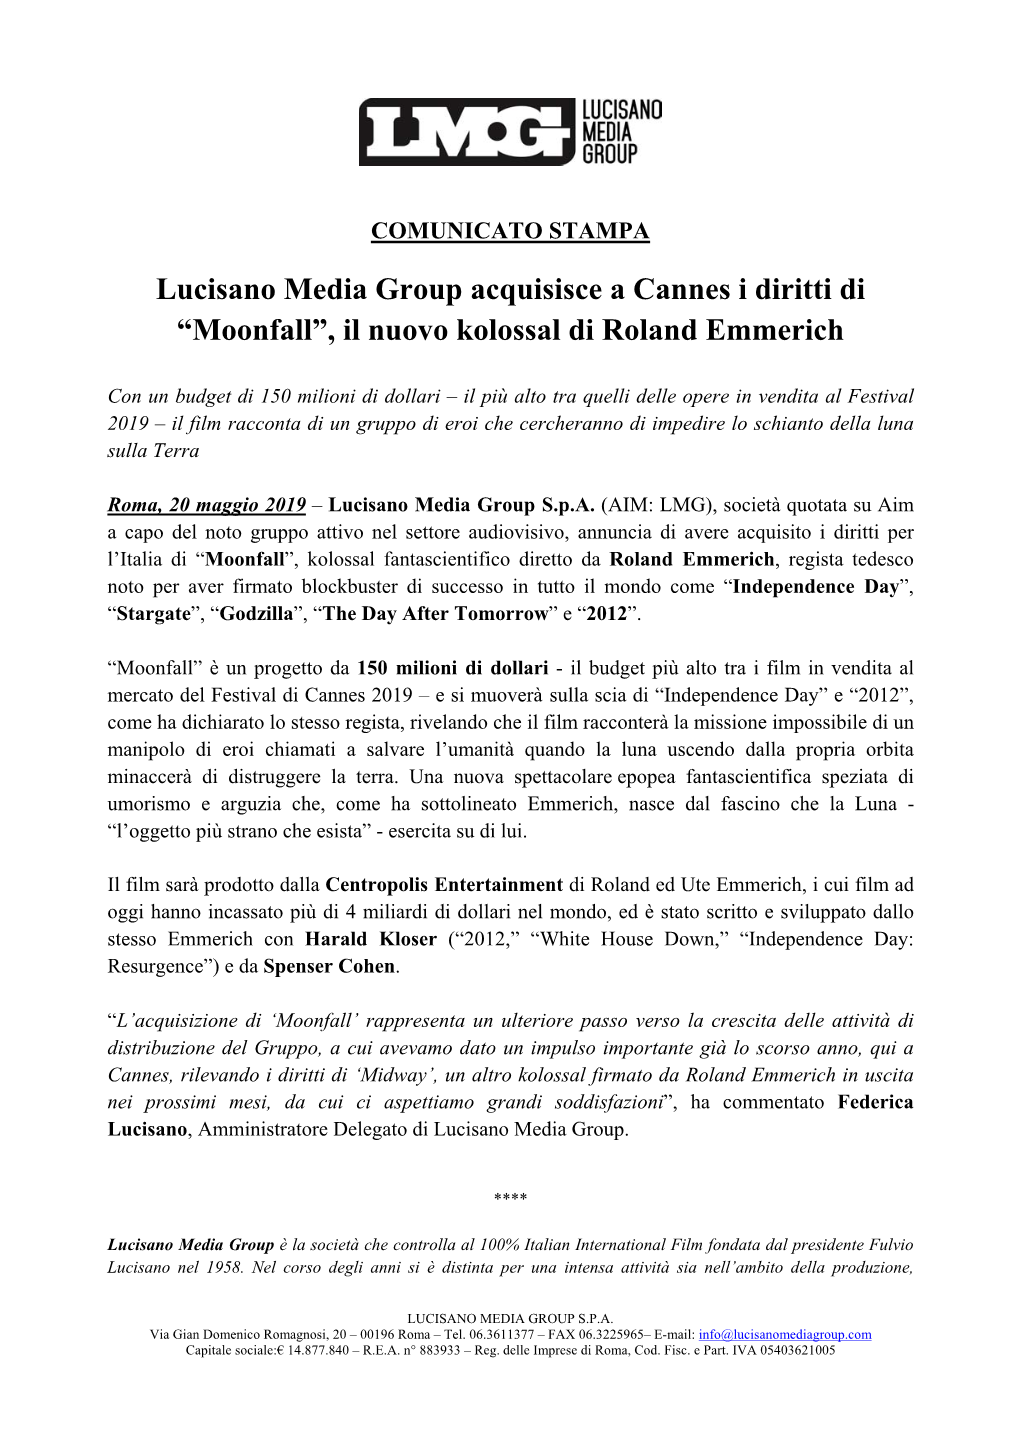 Lucisano Media Group Acquisisce a Cannes I Diritti Di “Moonfall”, Il